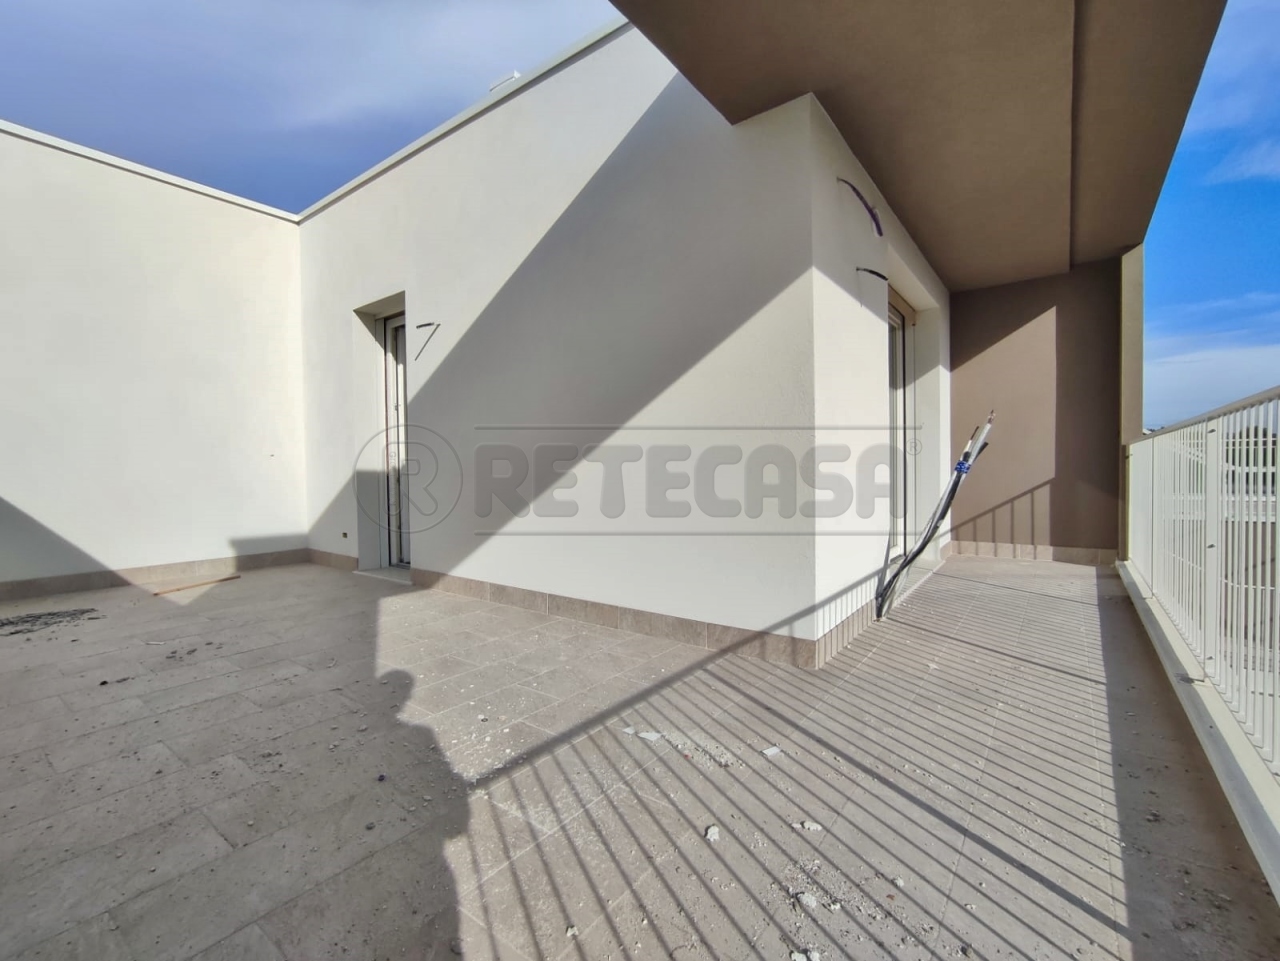 Appartamento in vendita a Montebello Vicentino, 4 locali, prezzo € 225.000 | PortaleAgenzieImmobiliari.it